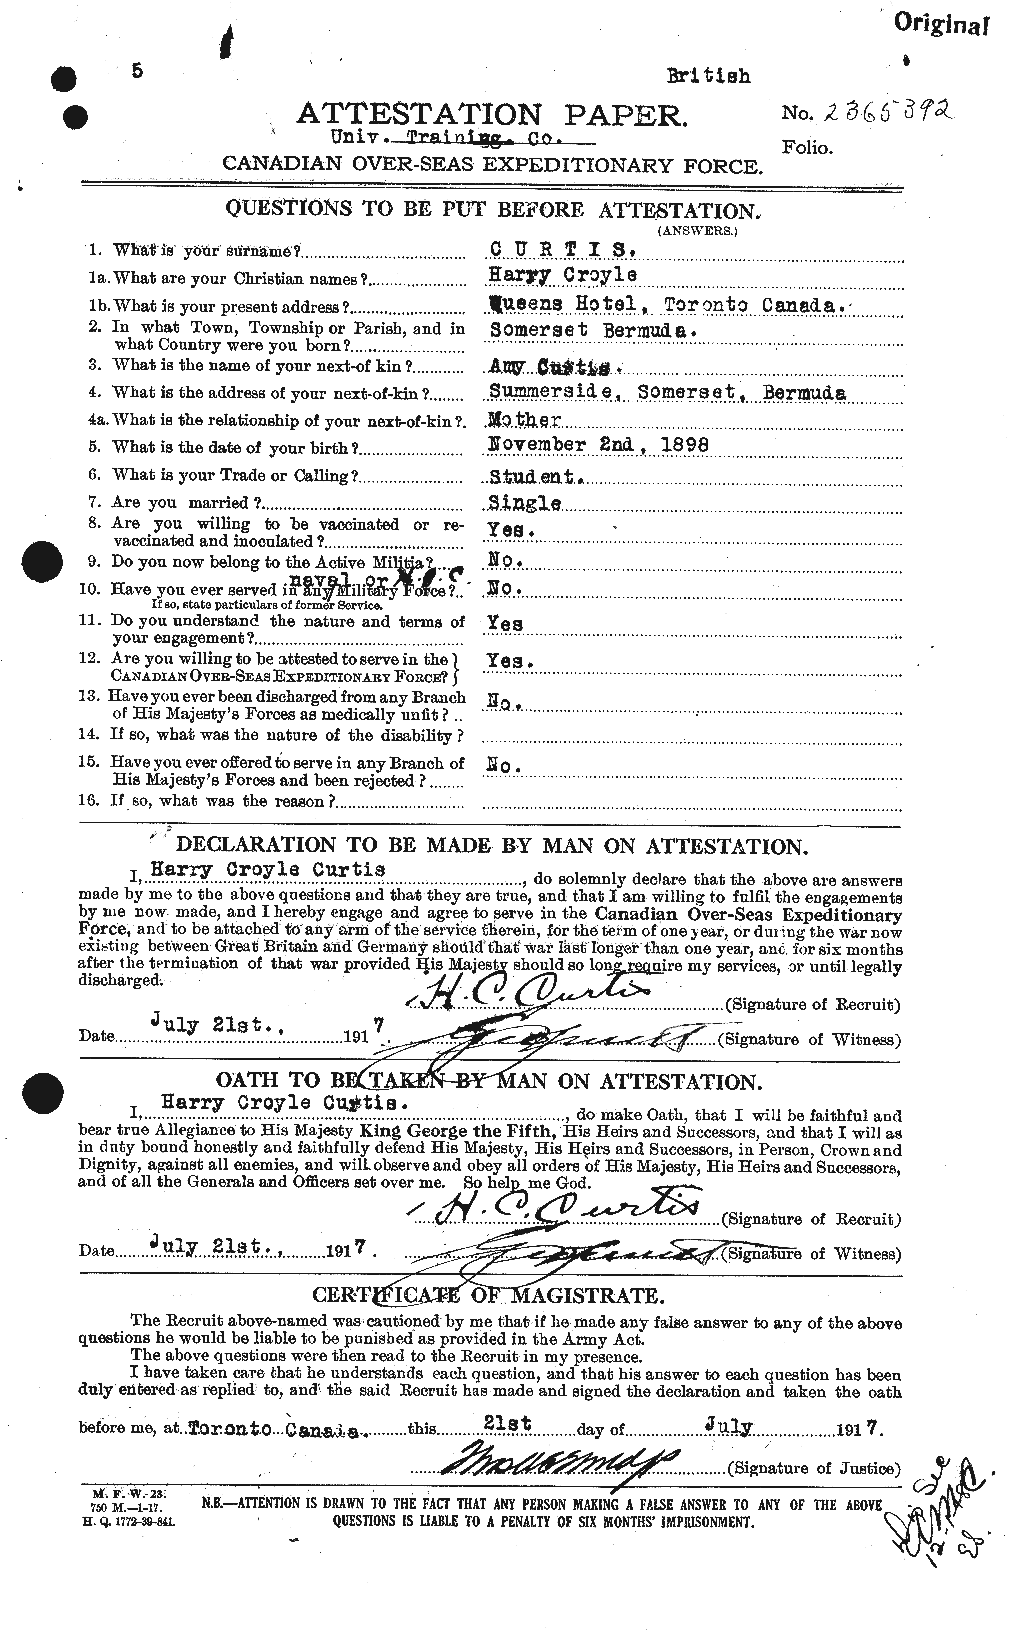 Dossiers du Personnel de la Première Guerre mondiale - CEC 072196a